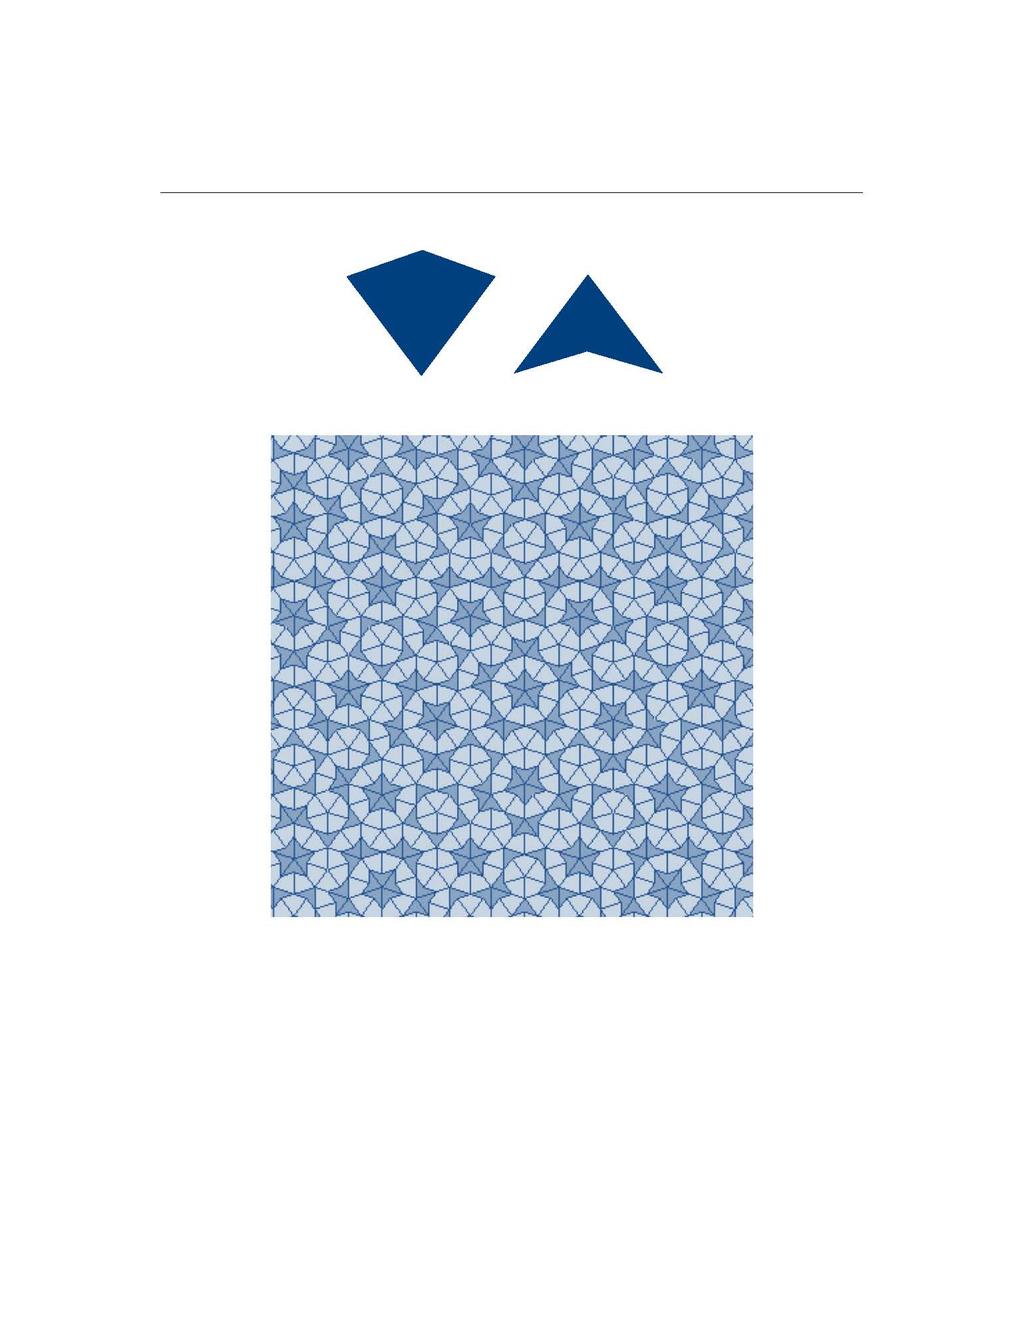 4 Introdución (a) (b) Figura 4: (a) O dardo e o papaventos; (b) Mosaico de Penrose.